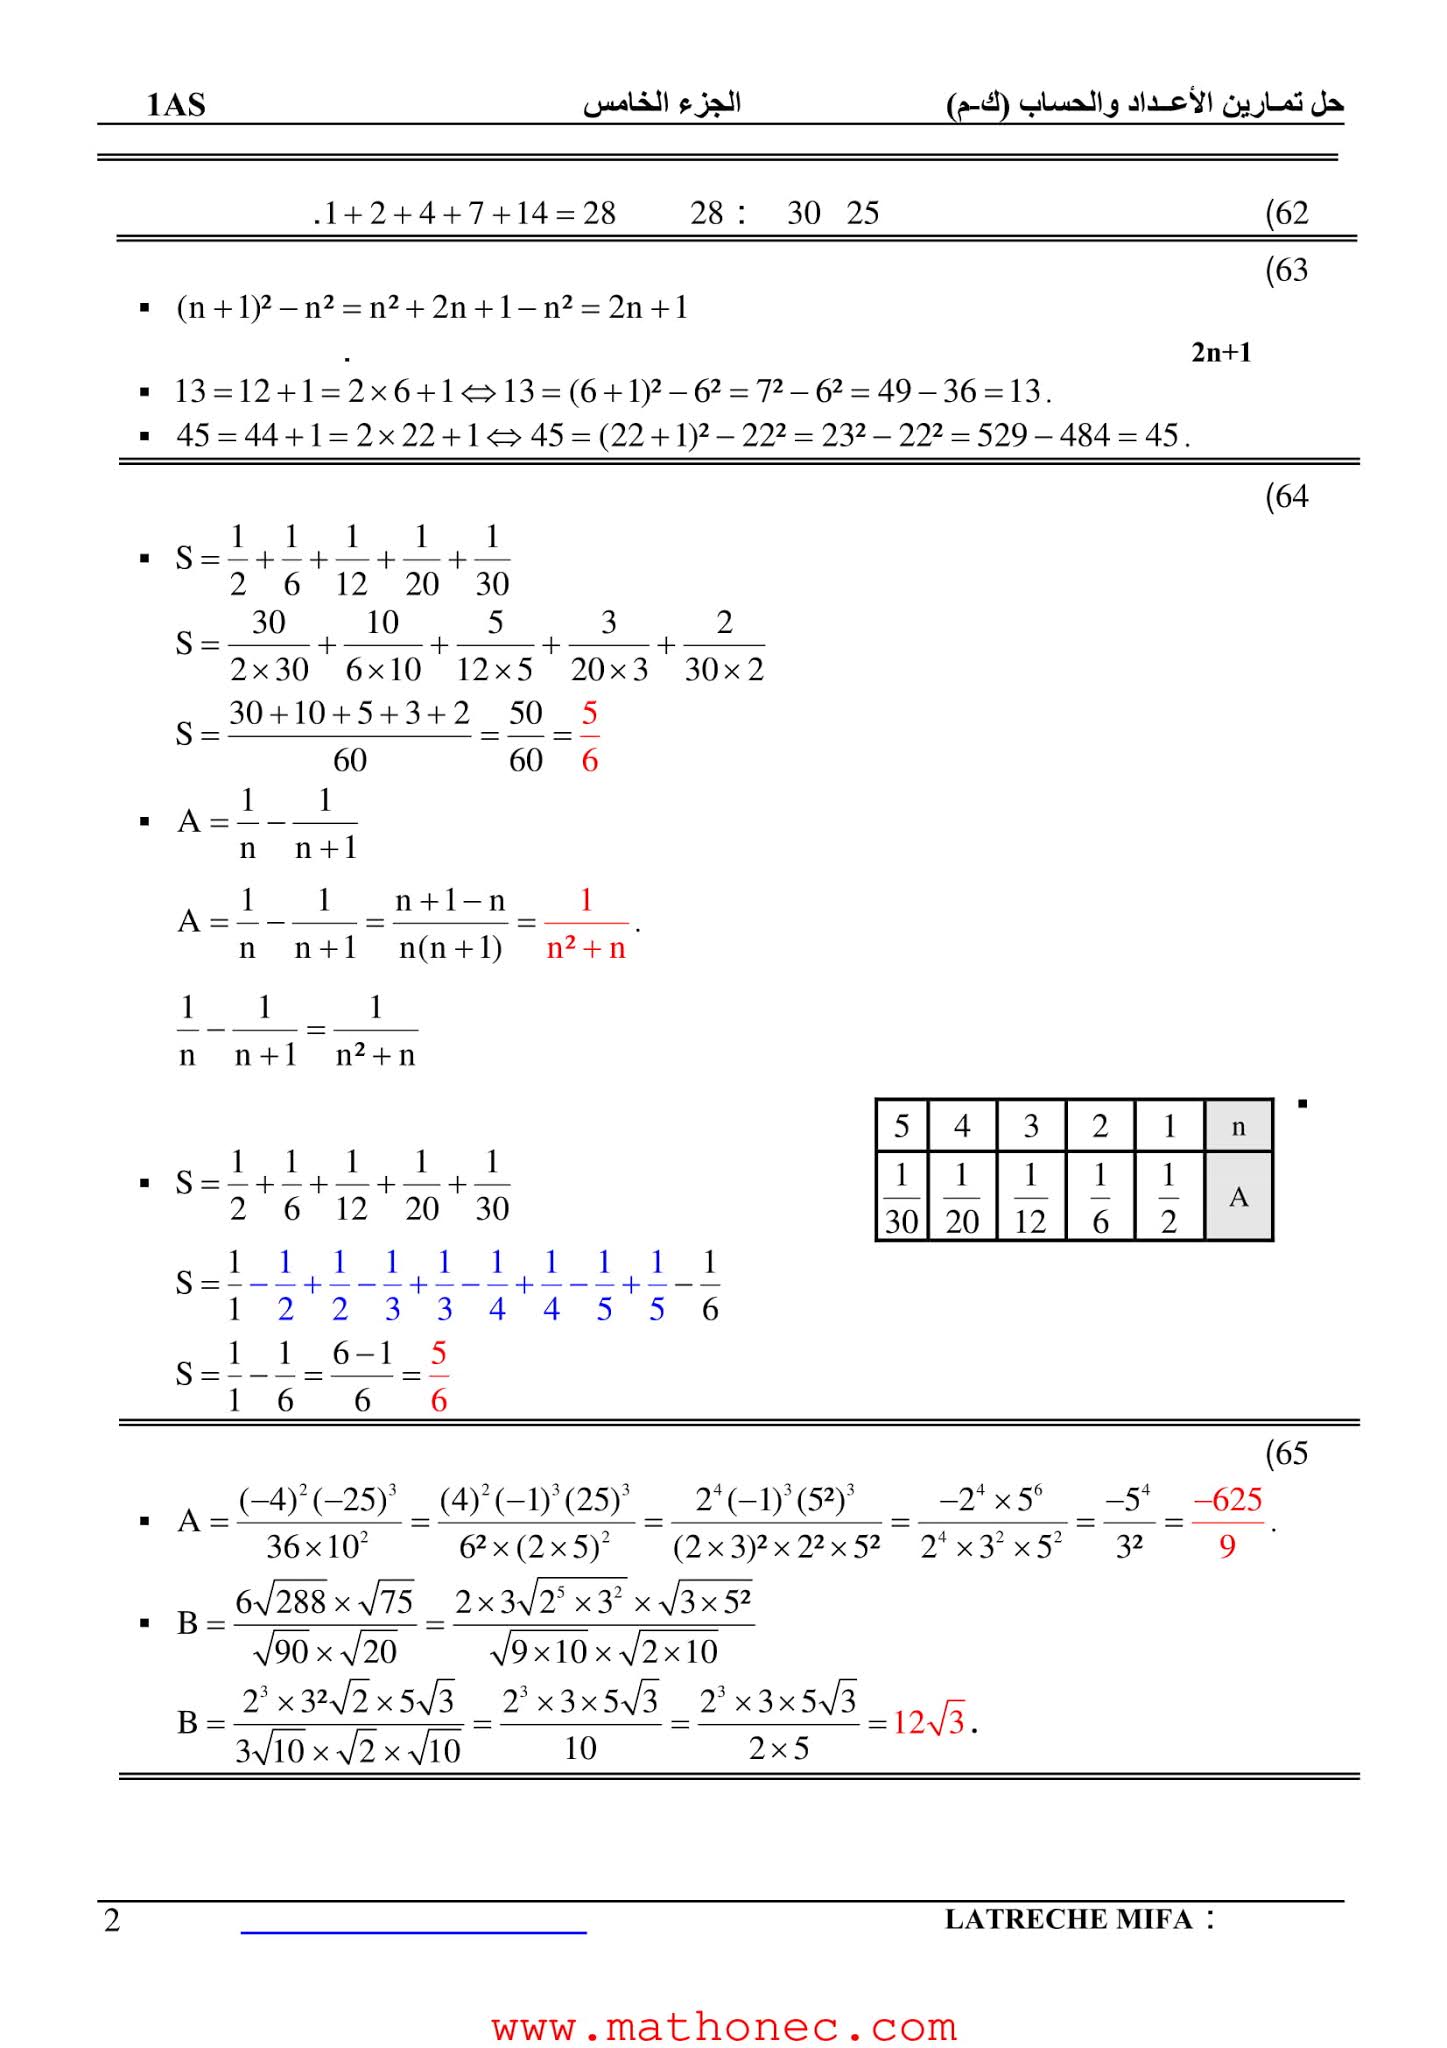 حل تمارين كتاب الرياضيات 1 ثانوي علمي صفحة 22